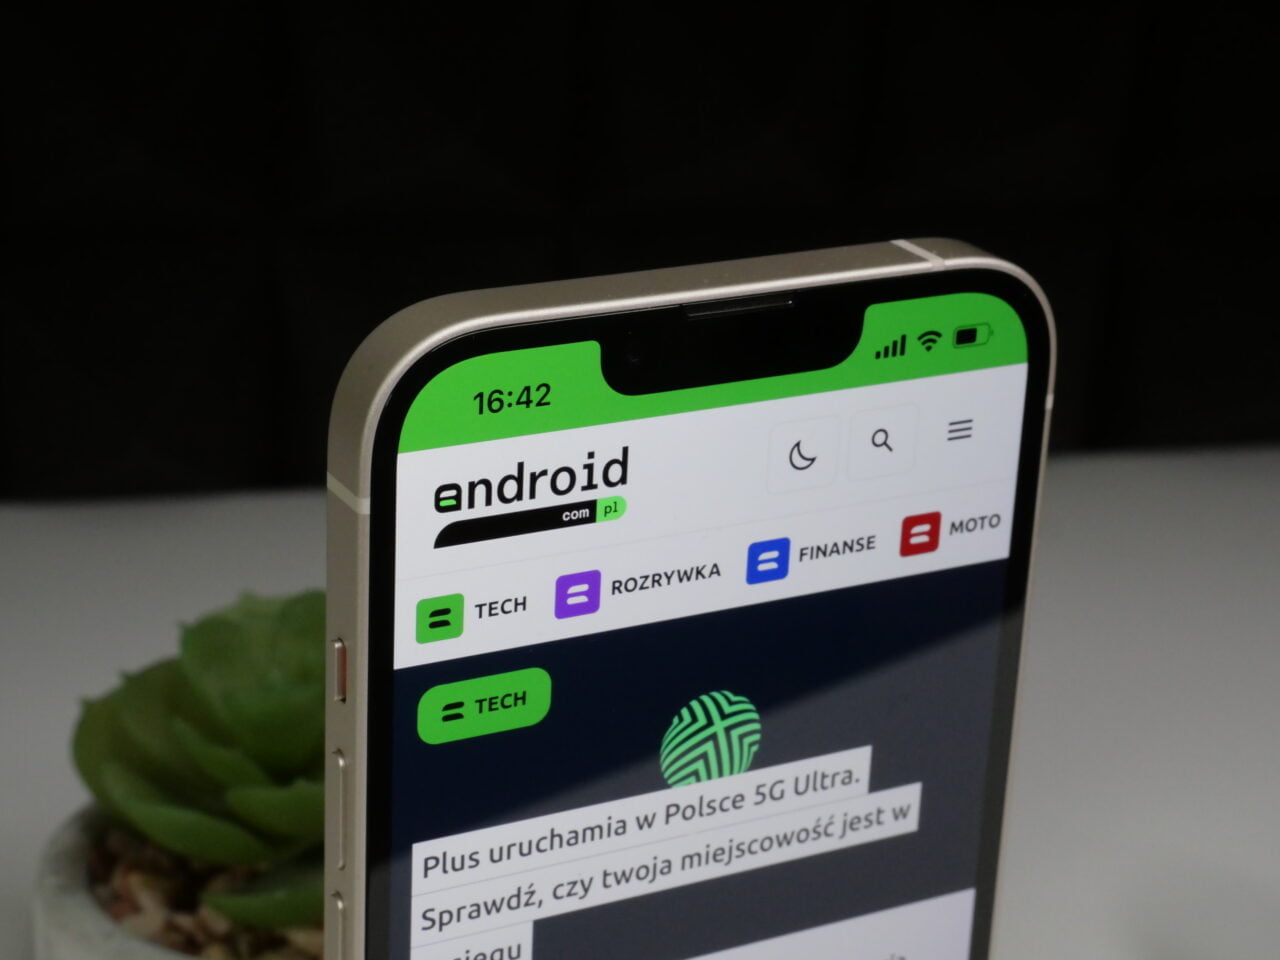 android, plus uruchamia nową aplikację. przyda ci się jeśli planowałeś sprzedać stary smartfon